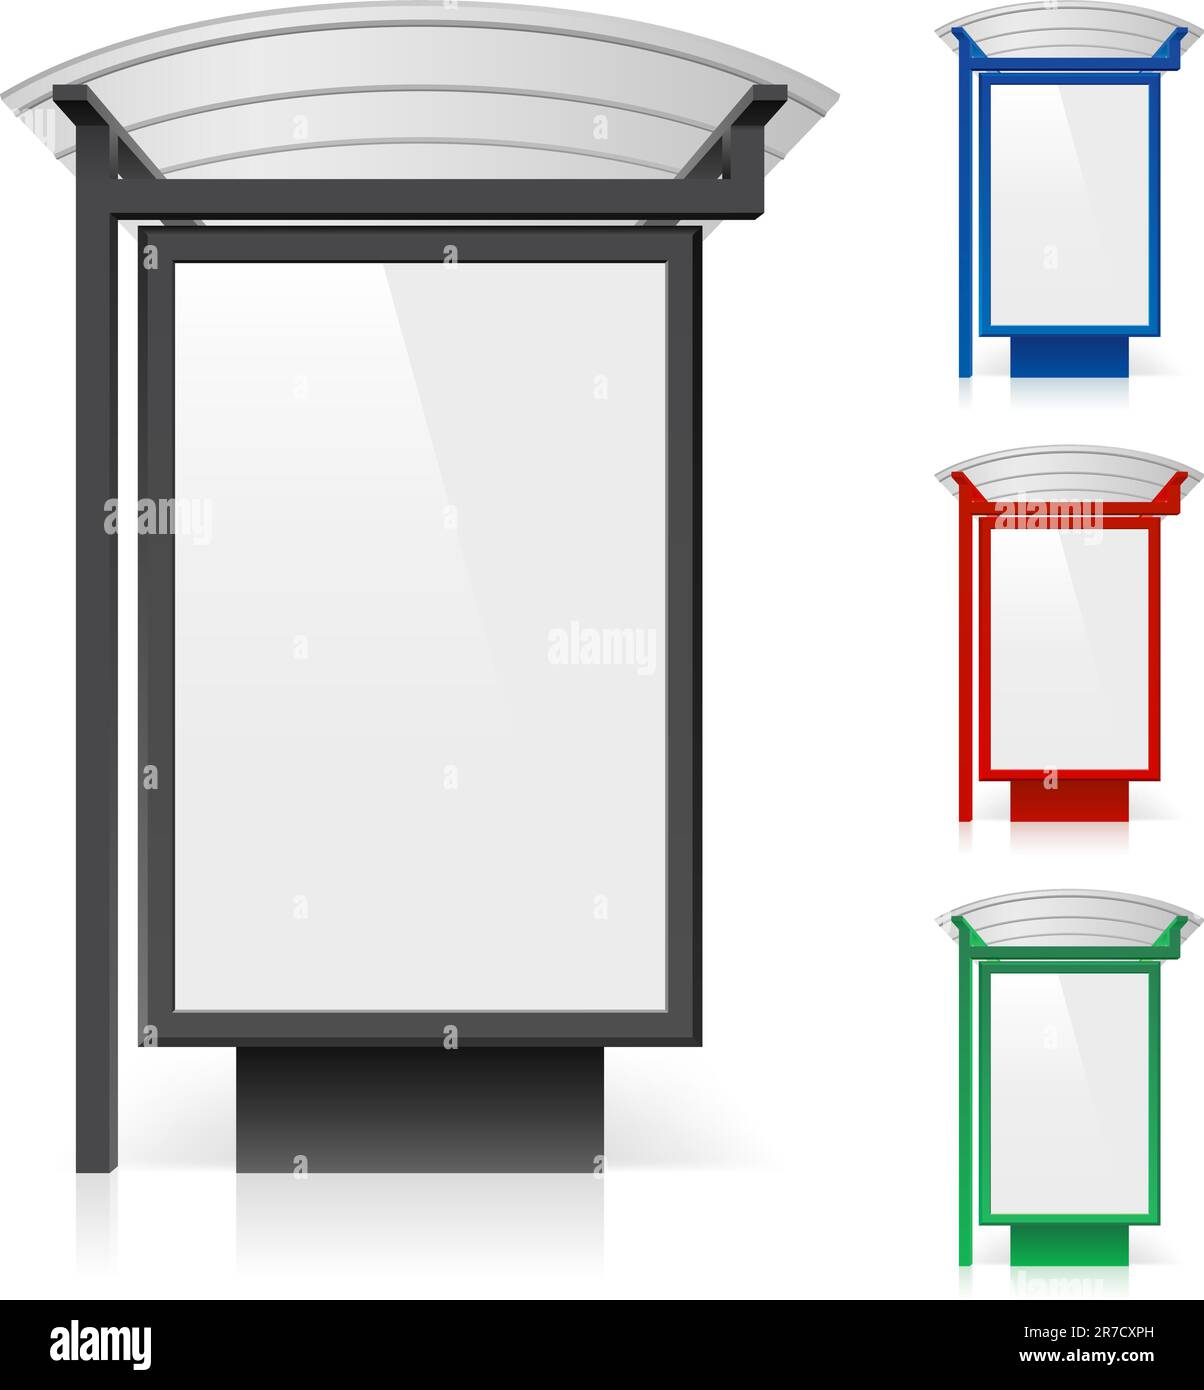 Un panneau d'affichage à un arrêt d'autobus en différentes couleurs. Illustration sur fond blanc Illustration de Vecteur